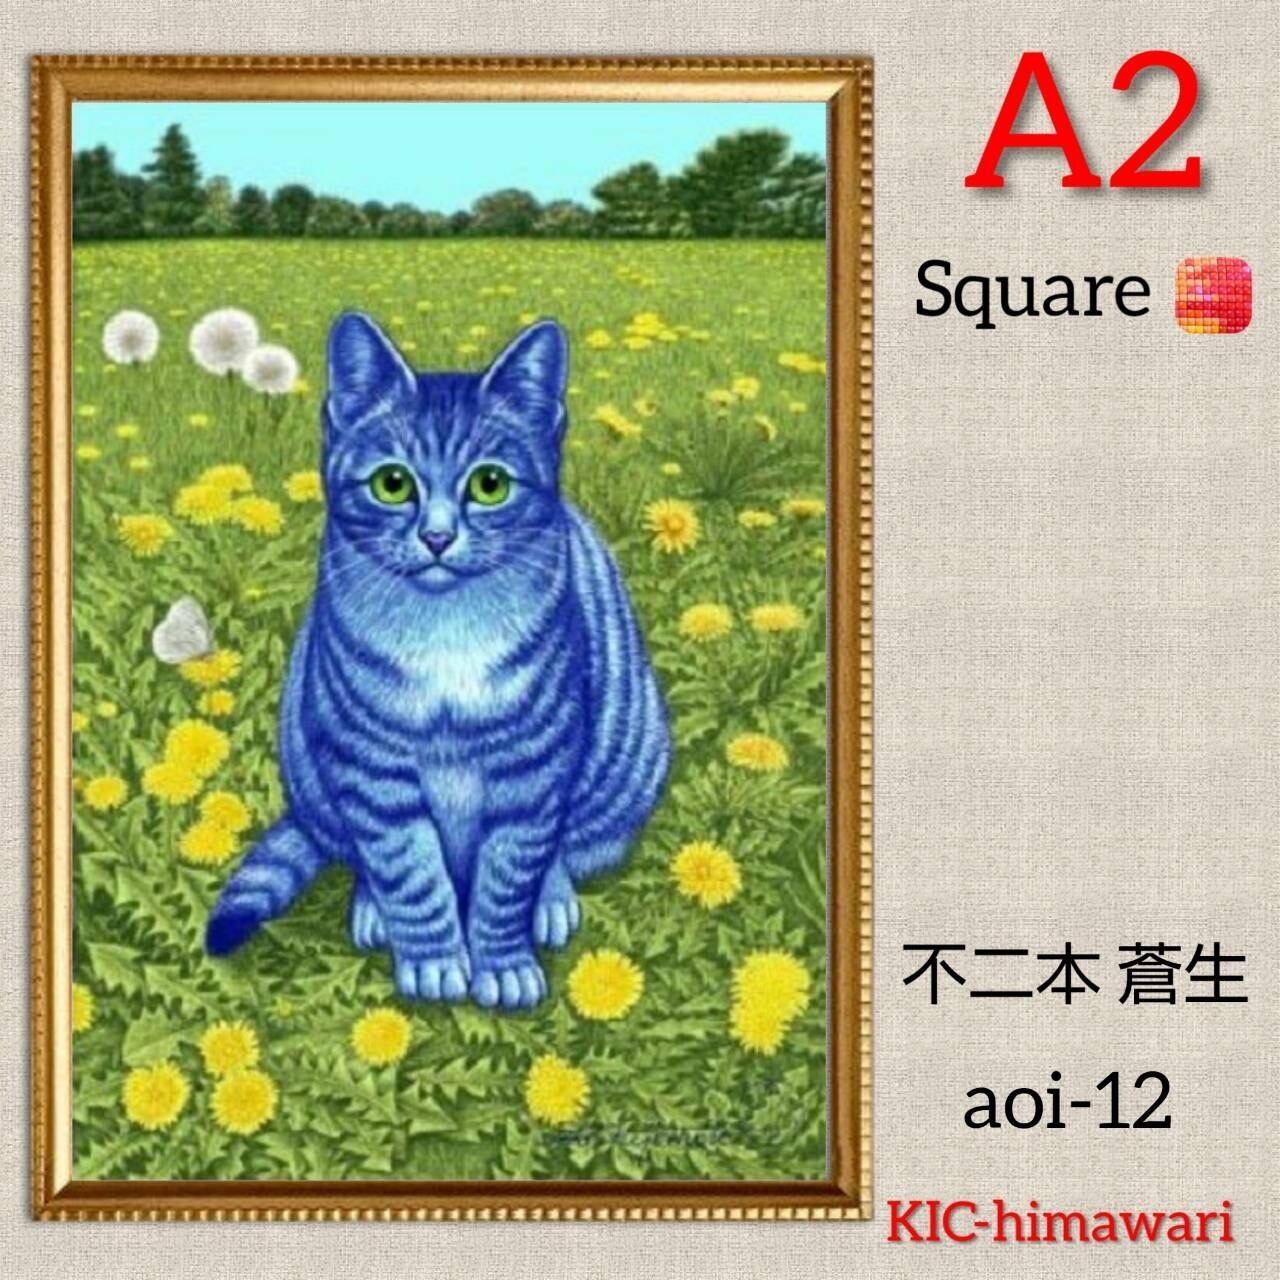 A2サイズ 四角ビーズ【aoi-12】ダイヤモンドアート